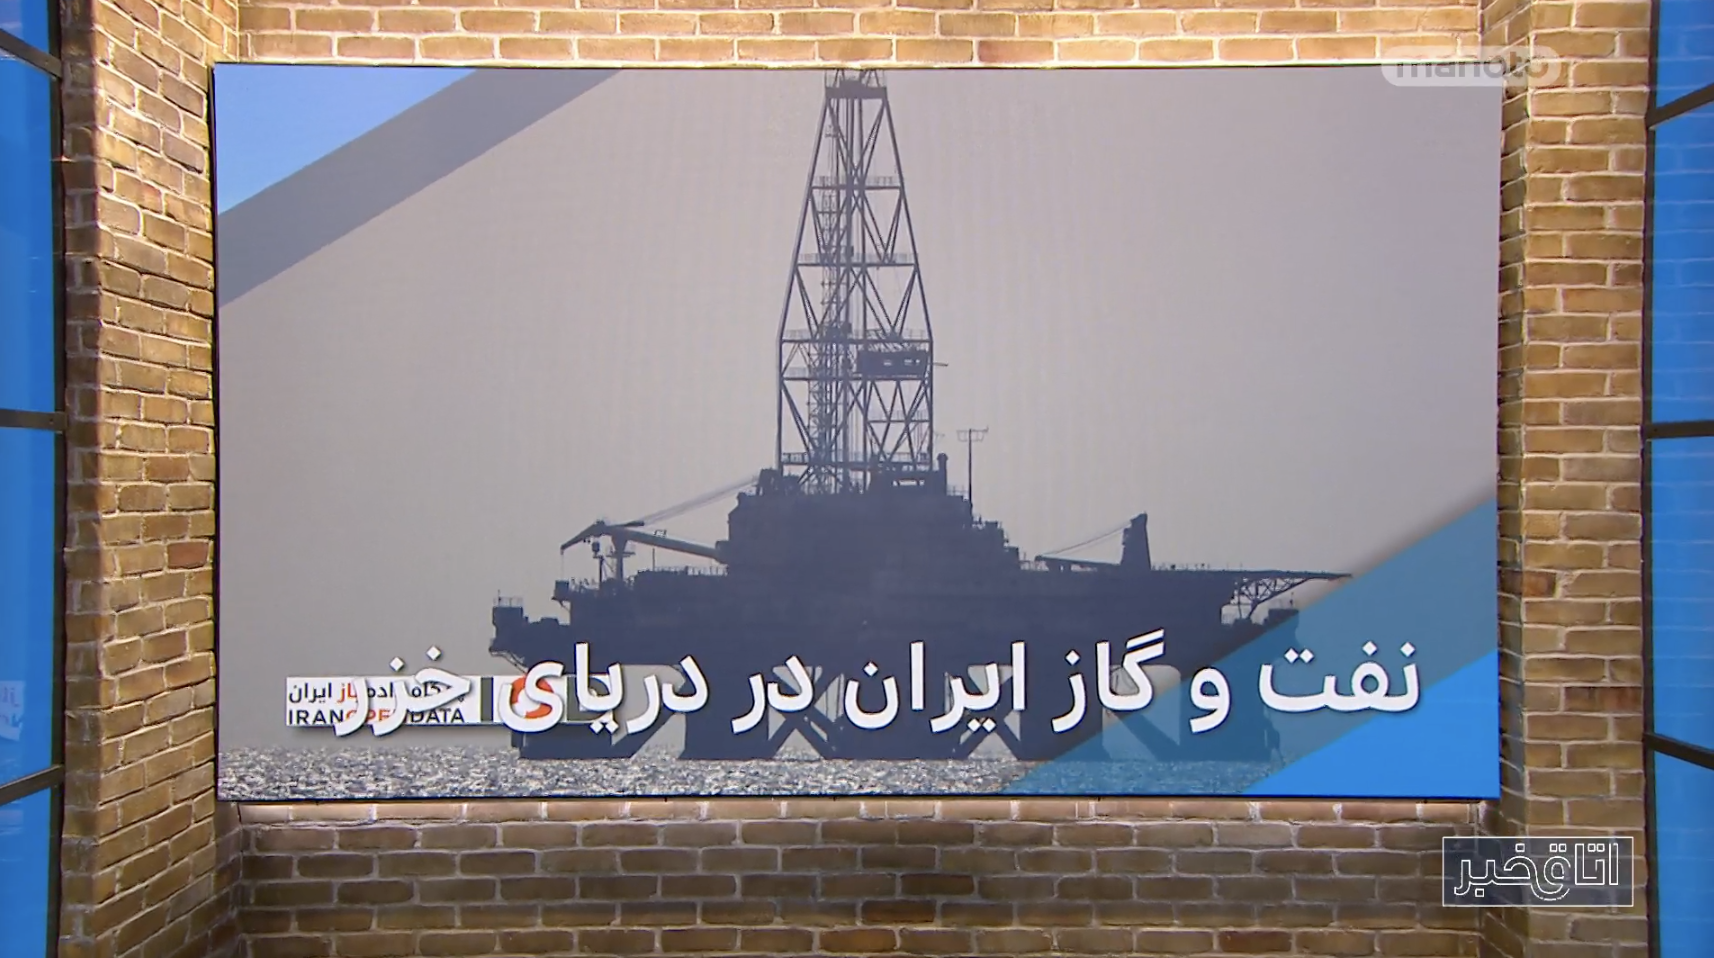 تولیدی صفر نفت و گاز ایران در دریای خزر